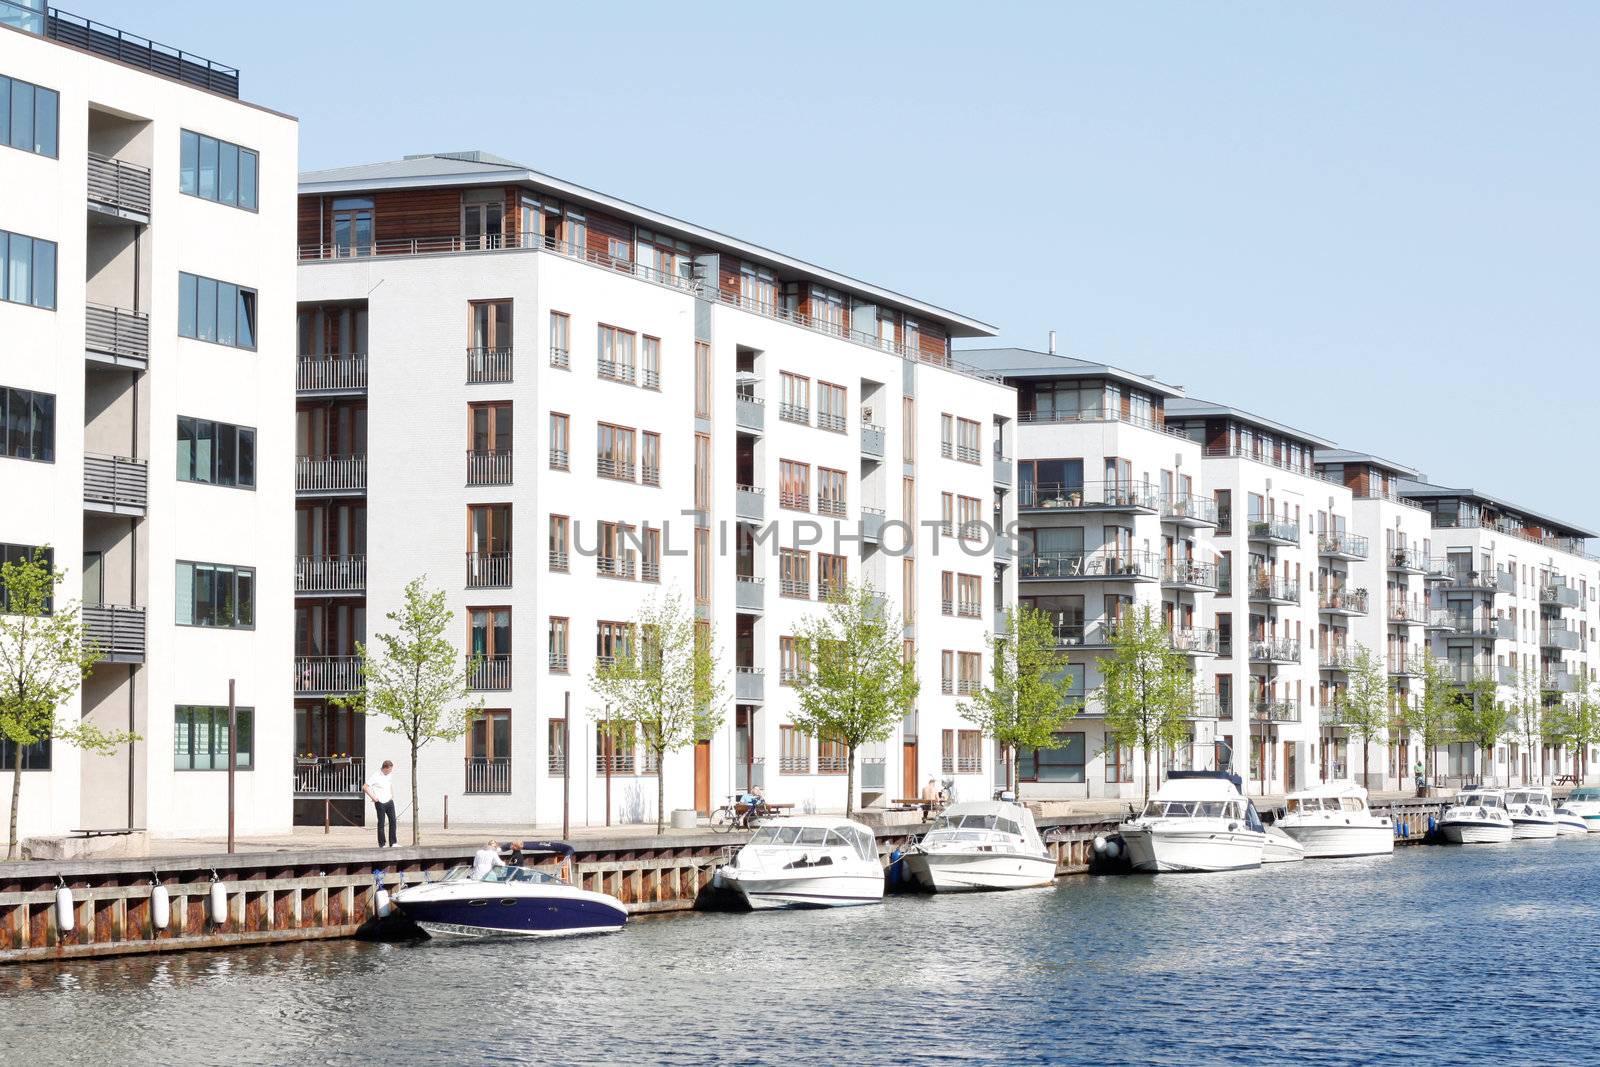 Apartments in Copenhagen by leeser